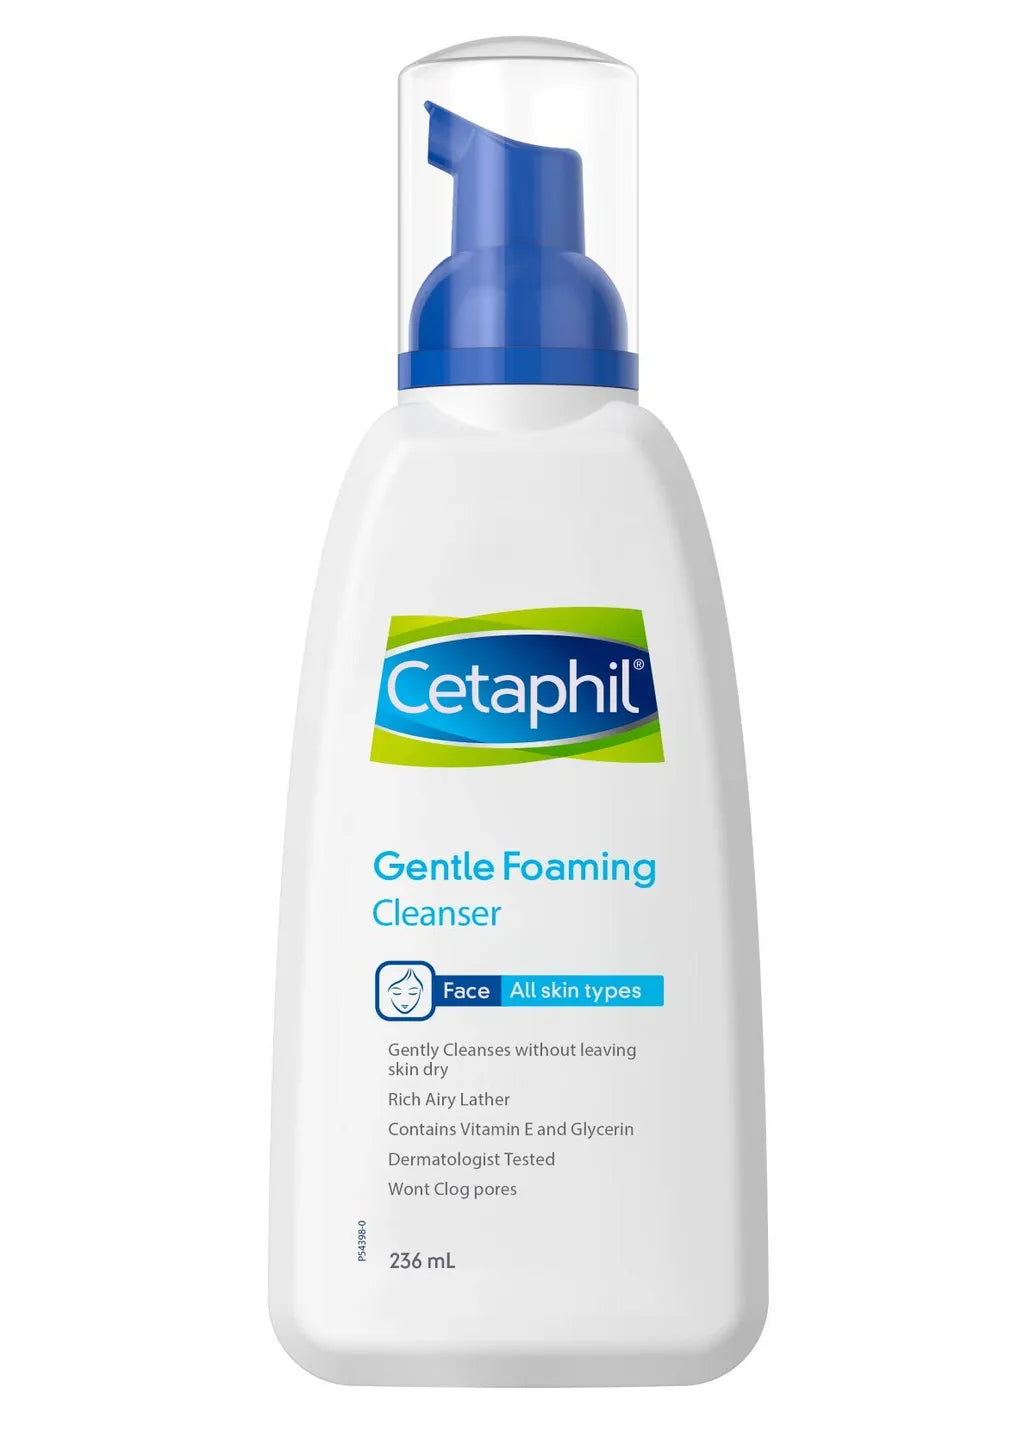 Cetaphil gentle foaming cleanser